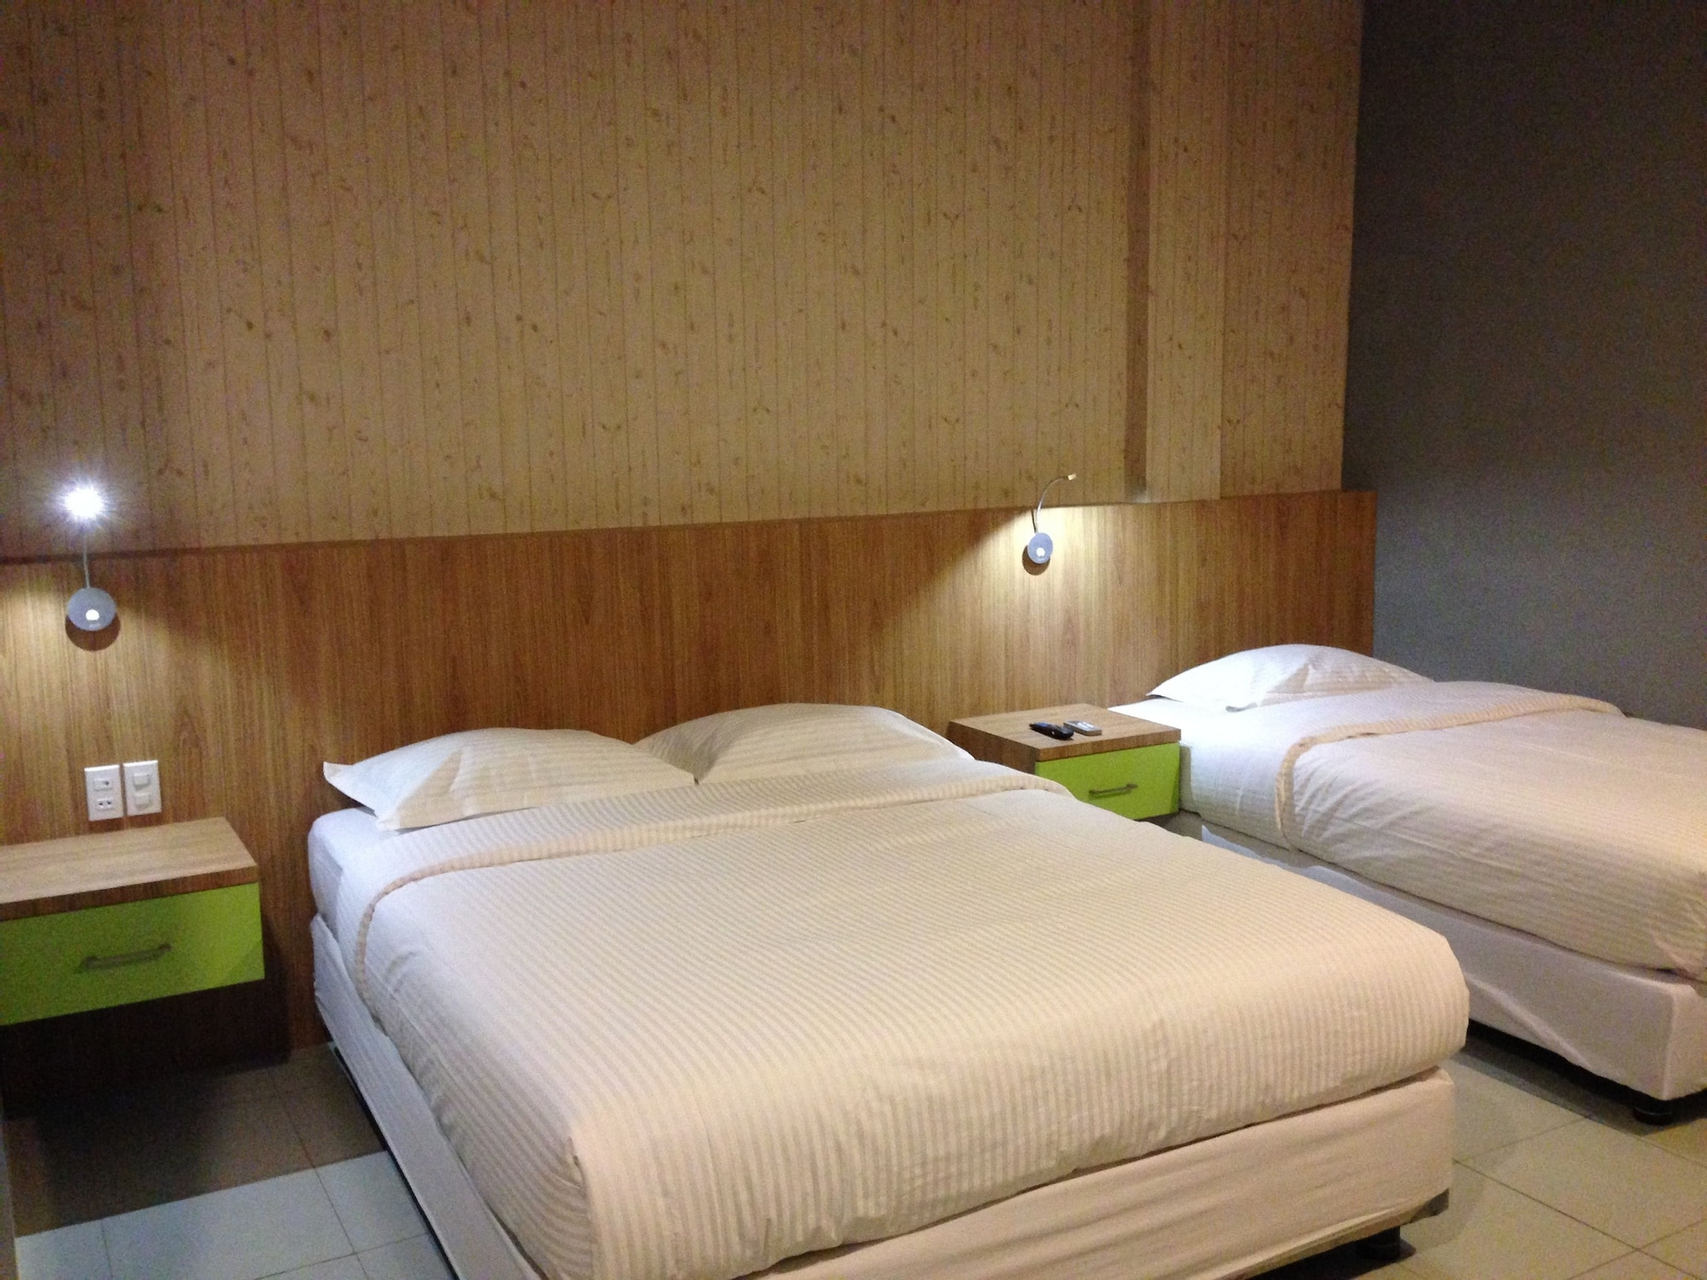 Bedroom 4, Wisma Sederhana Budget Hotel Medan, Medan